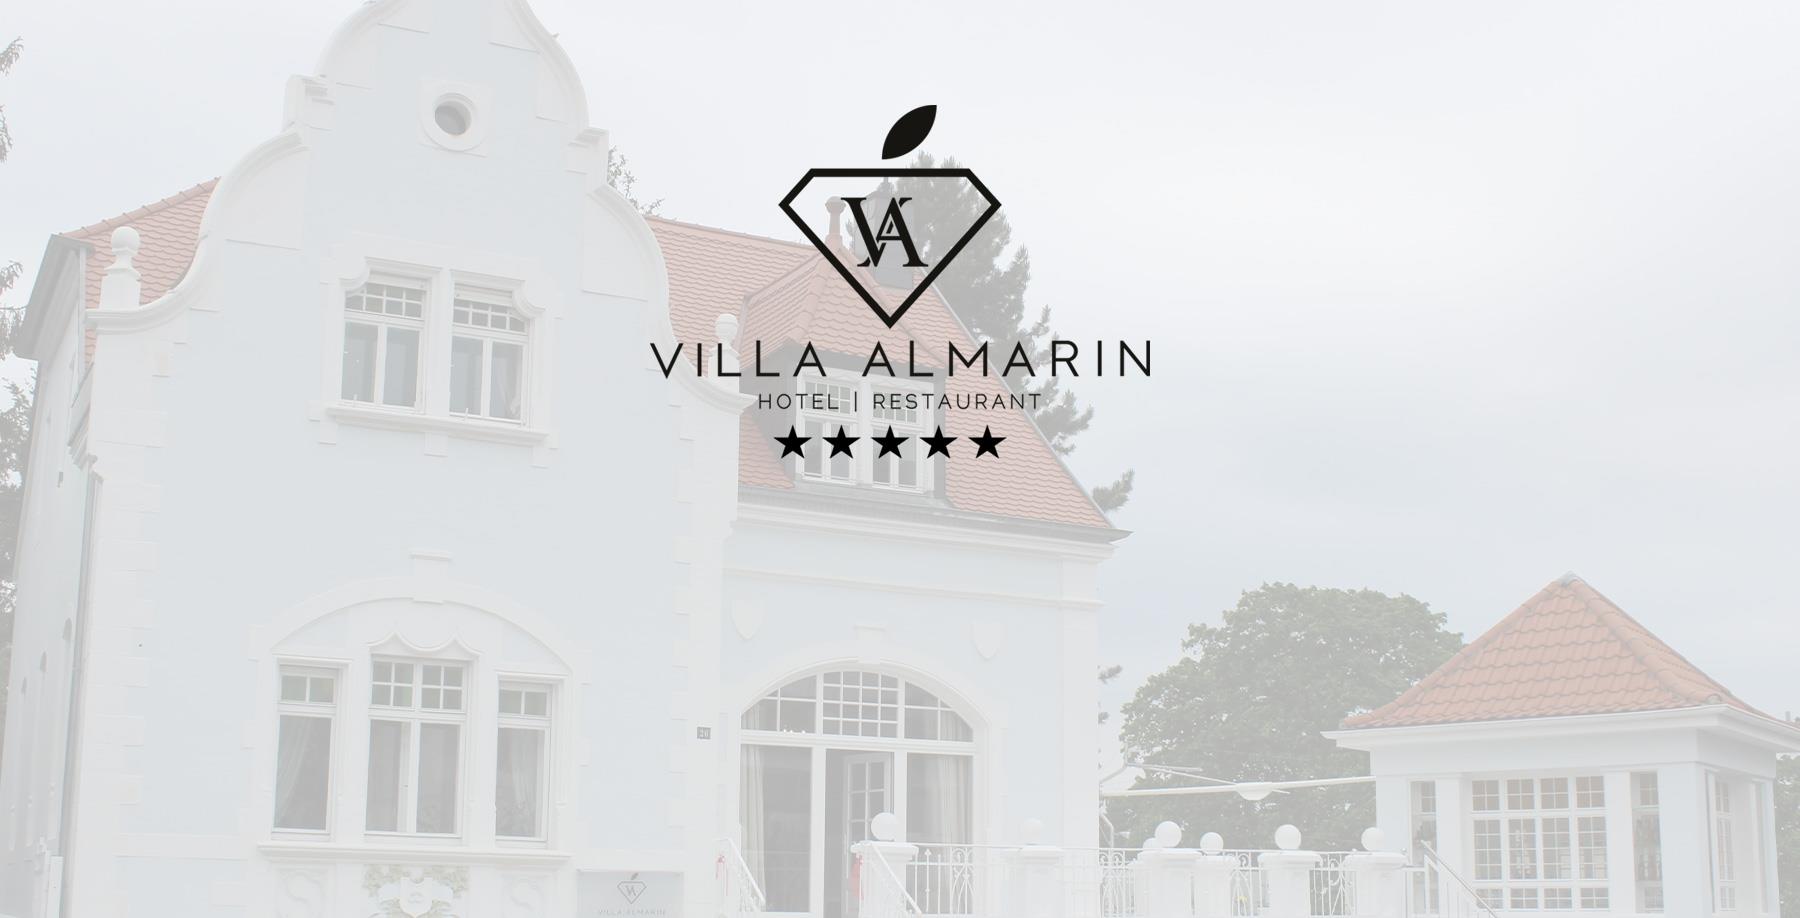 Villa Almarin Hote - DEUTSCHLAND - 1